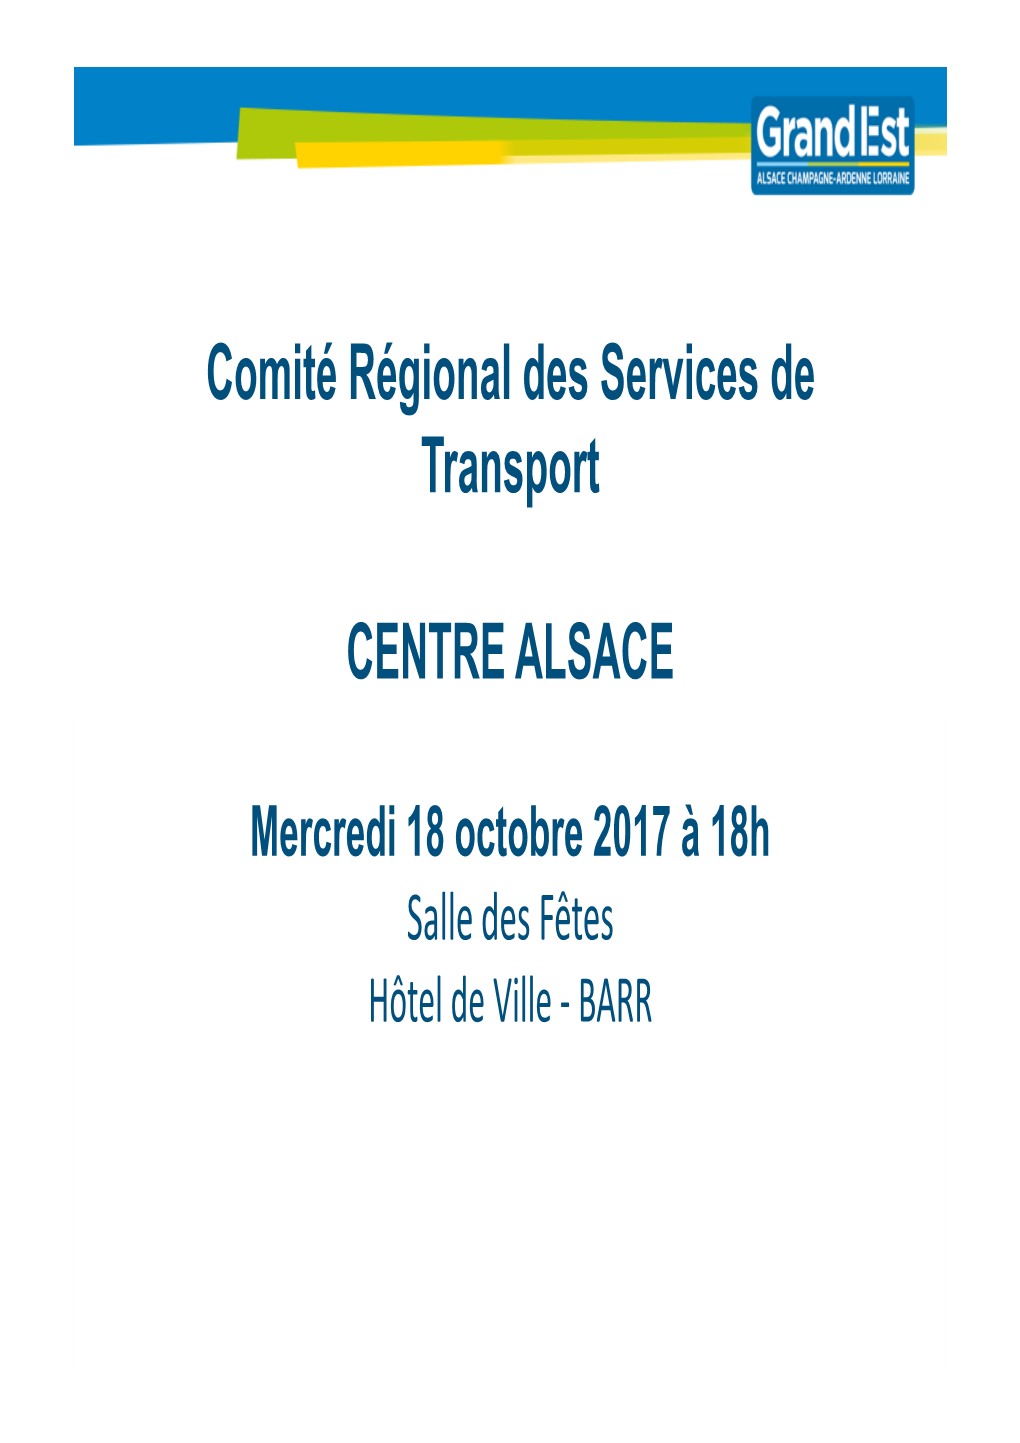 Présentation COREST Centre Alsace 2017 Vdef